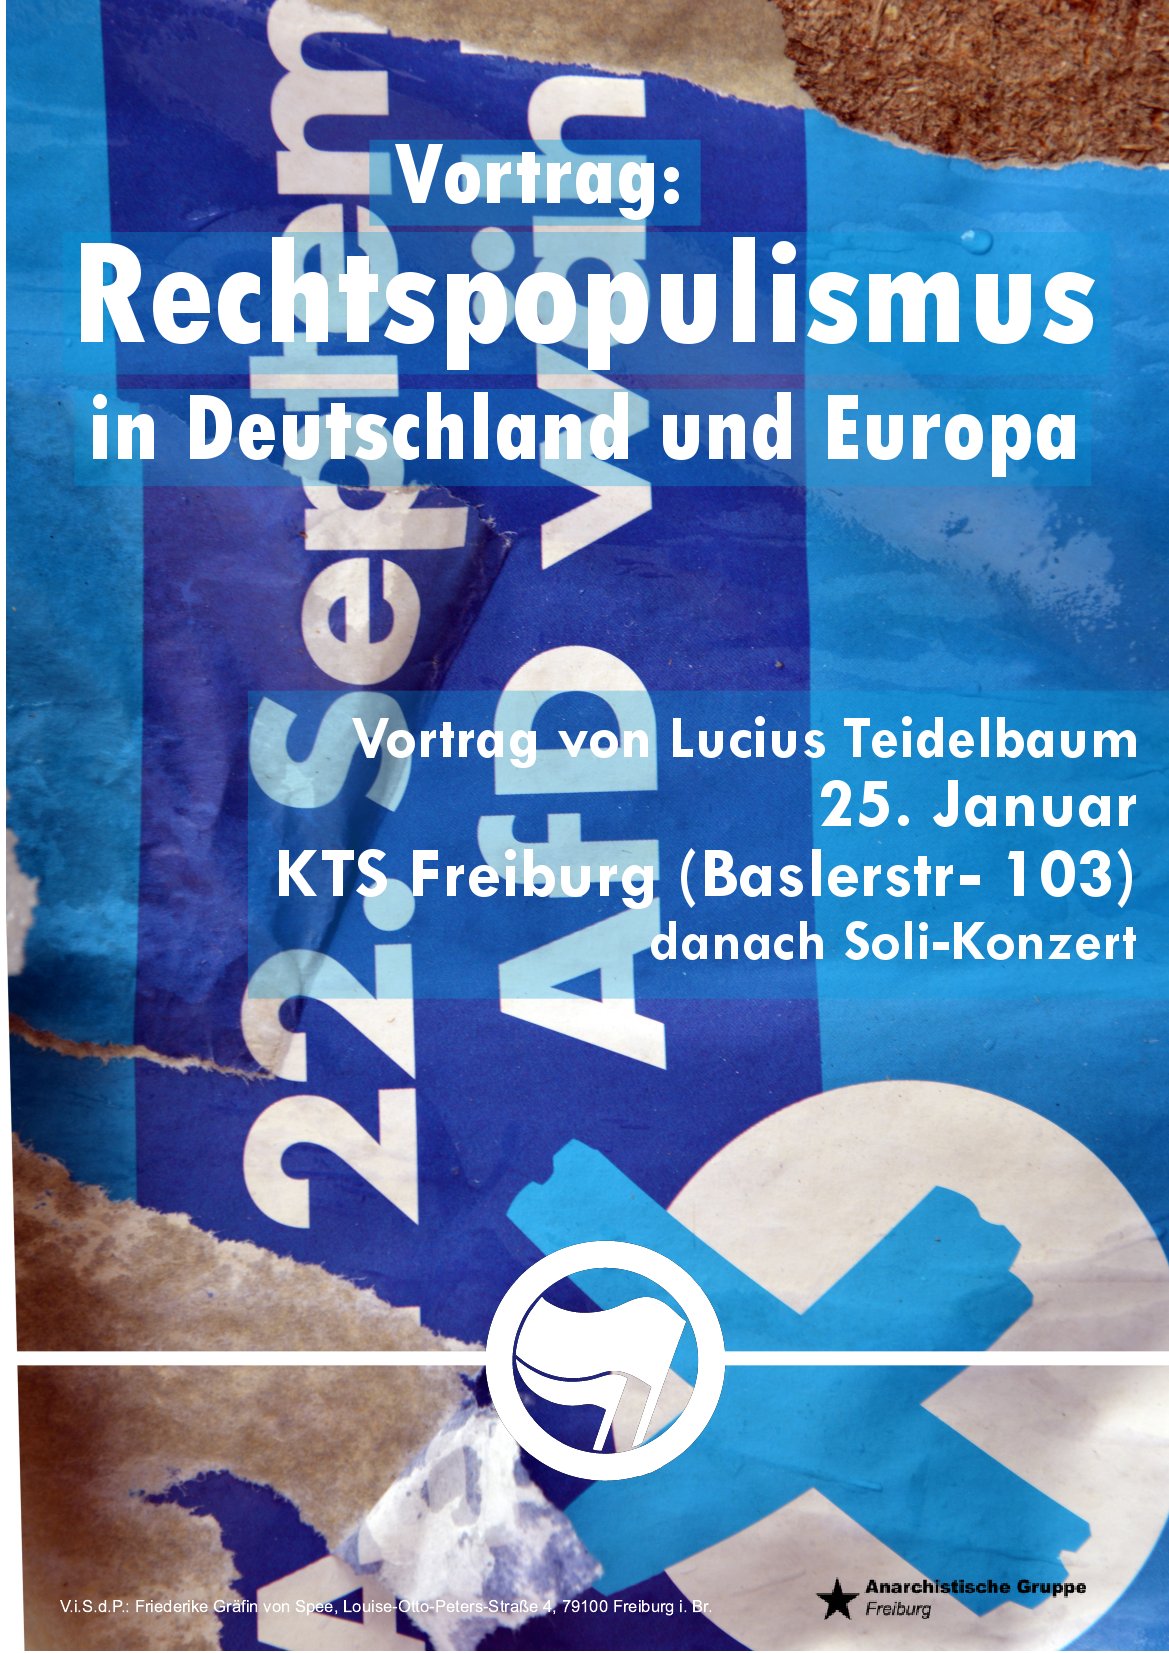 Vortrag: Rechtspopulismus in Deutschland und Europa